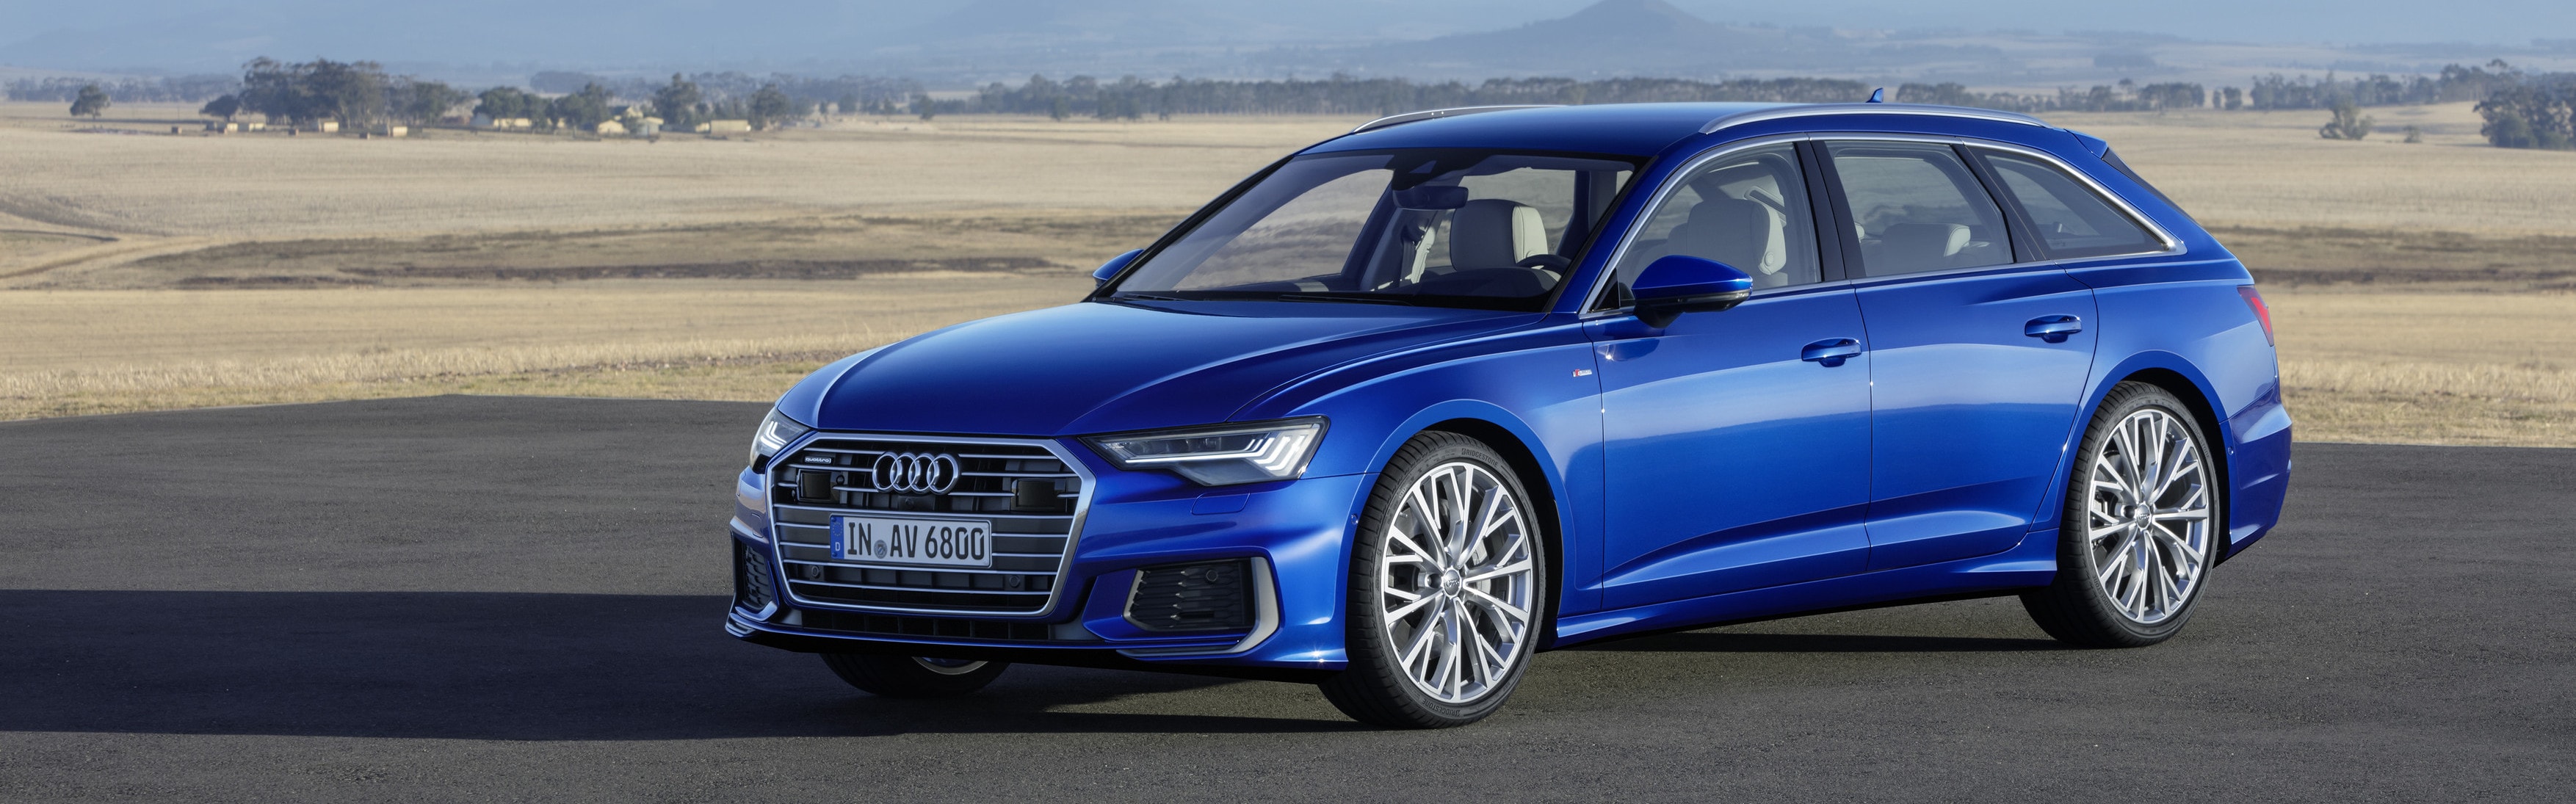 Audi A6 Avant modrý